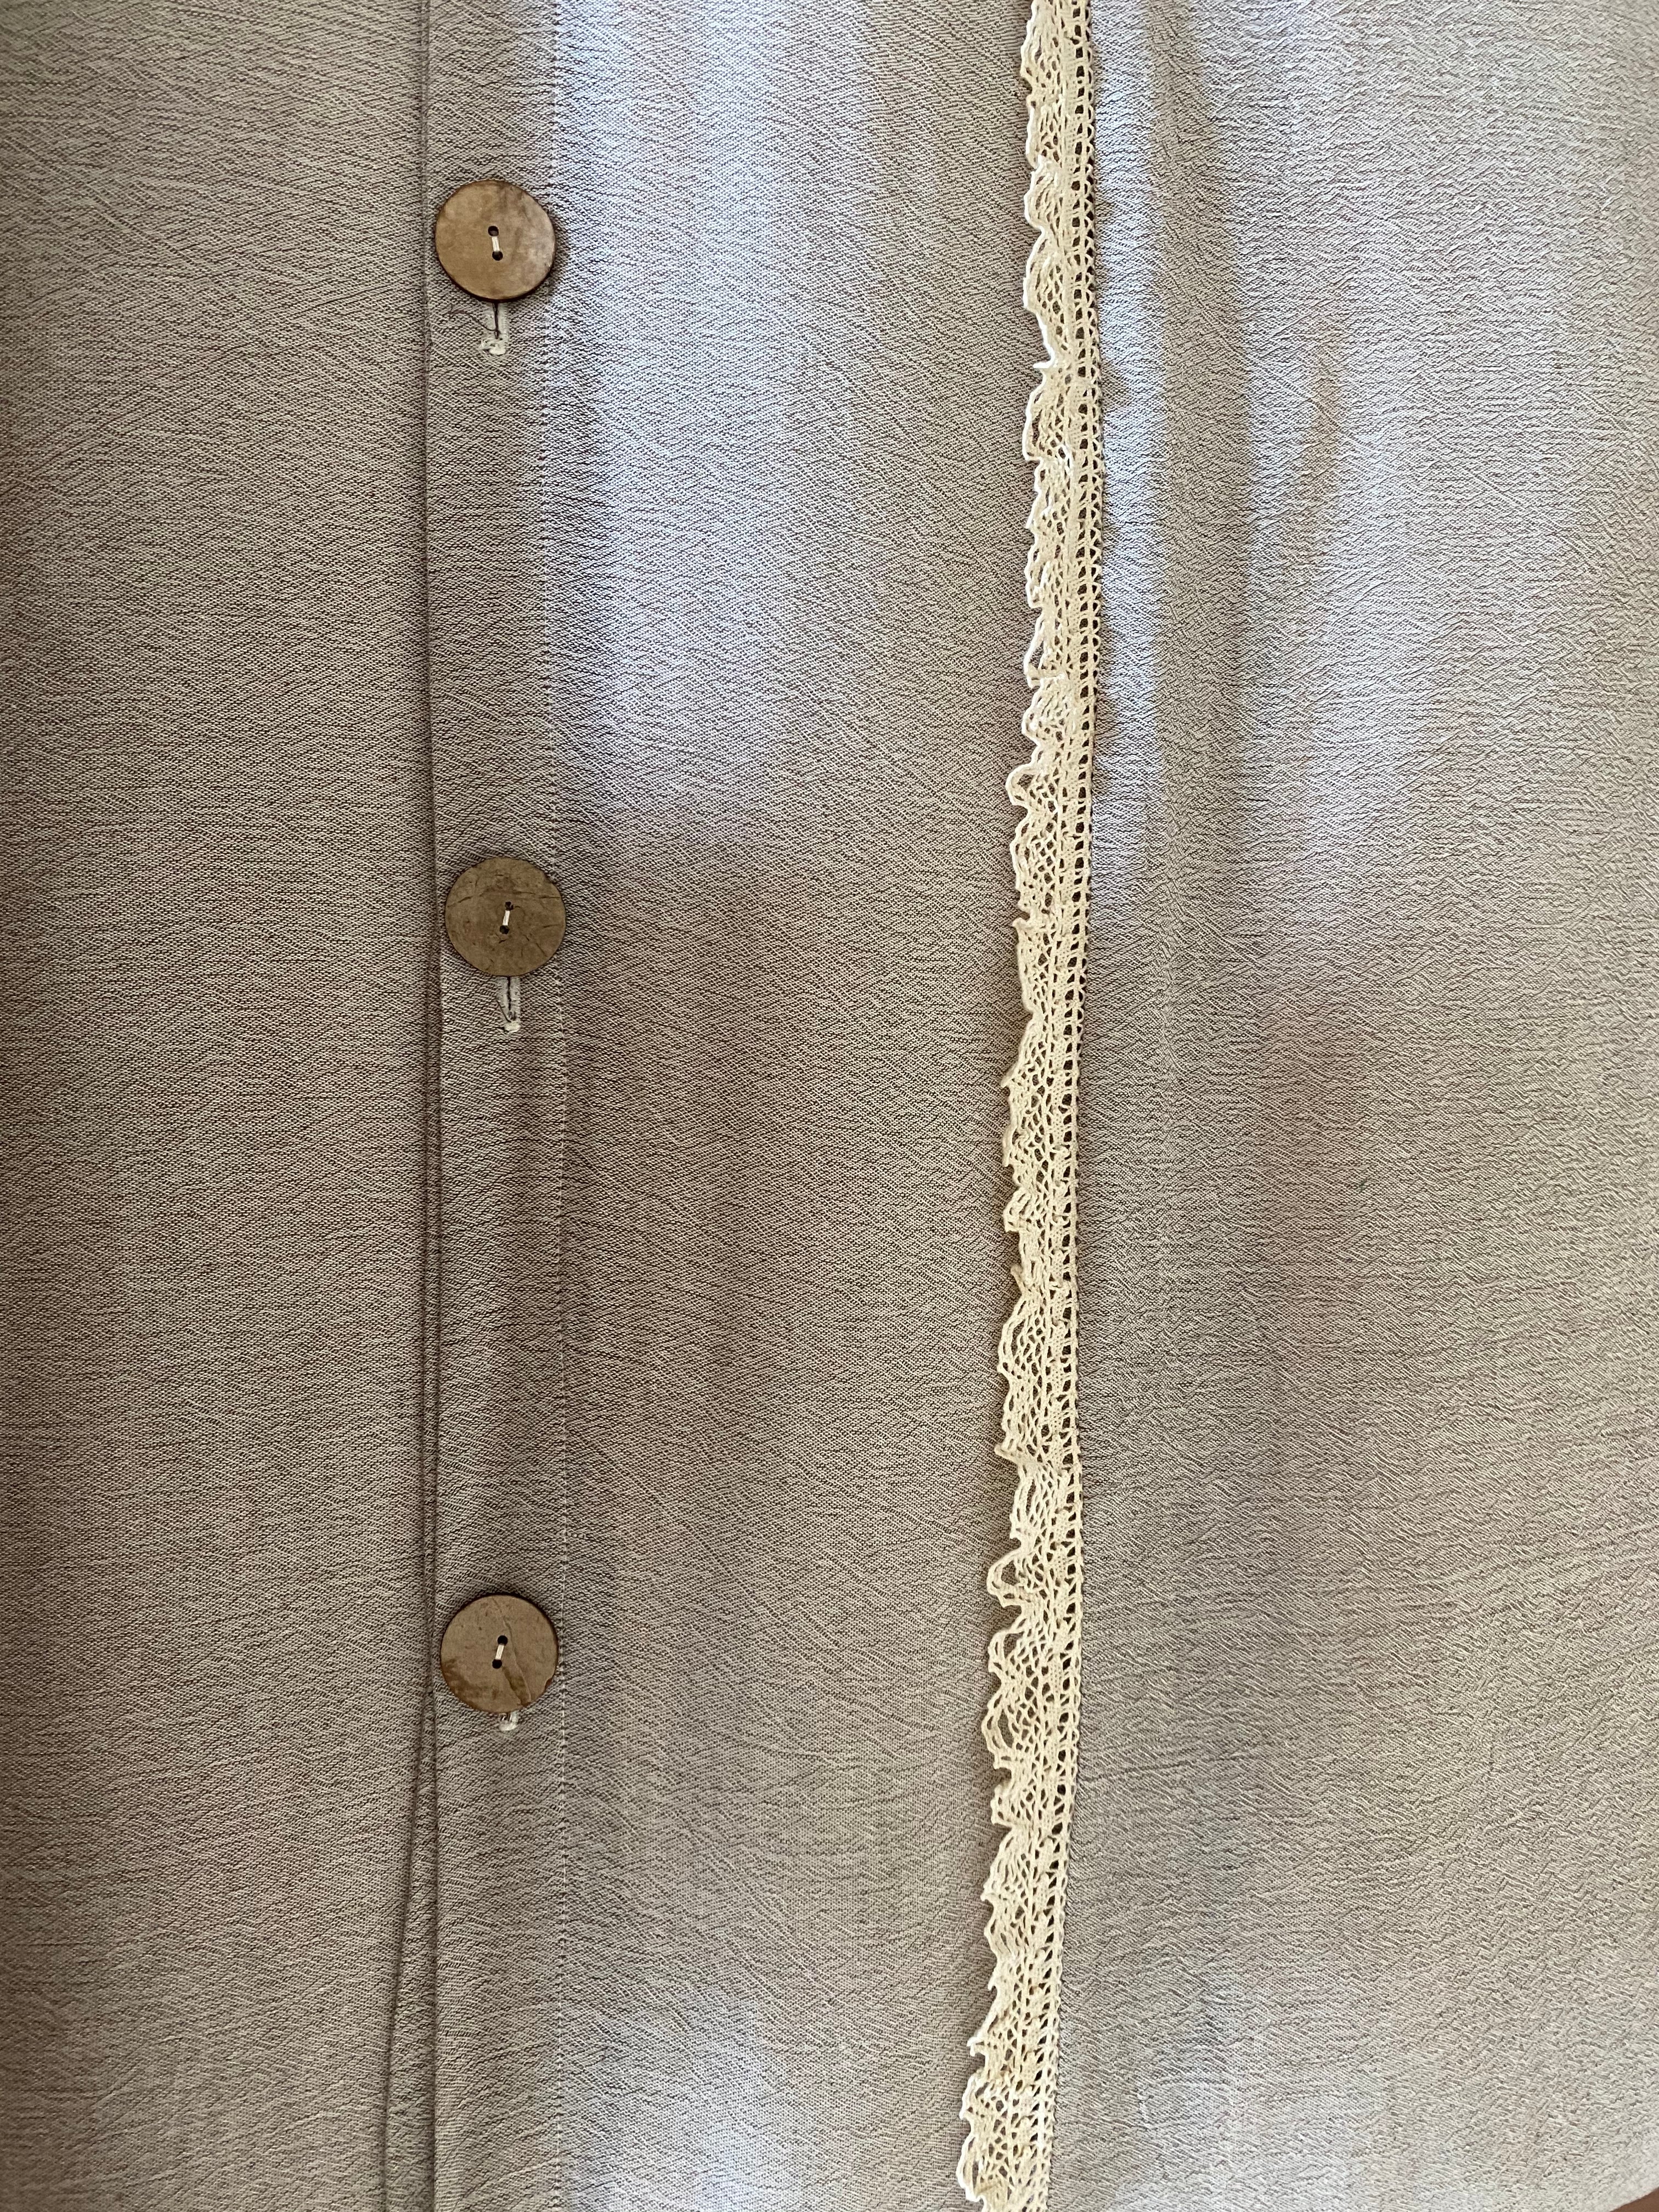 100% Cotton Sile Cloth 7 Pieces Lacy Duvet Cover Set